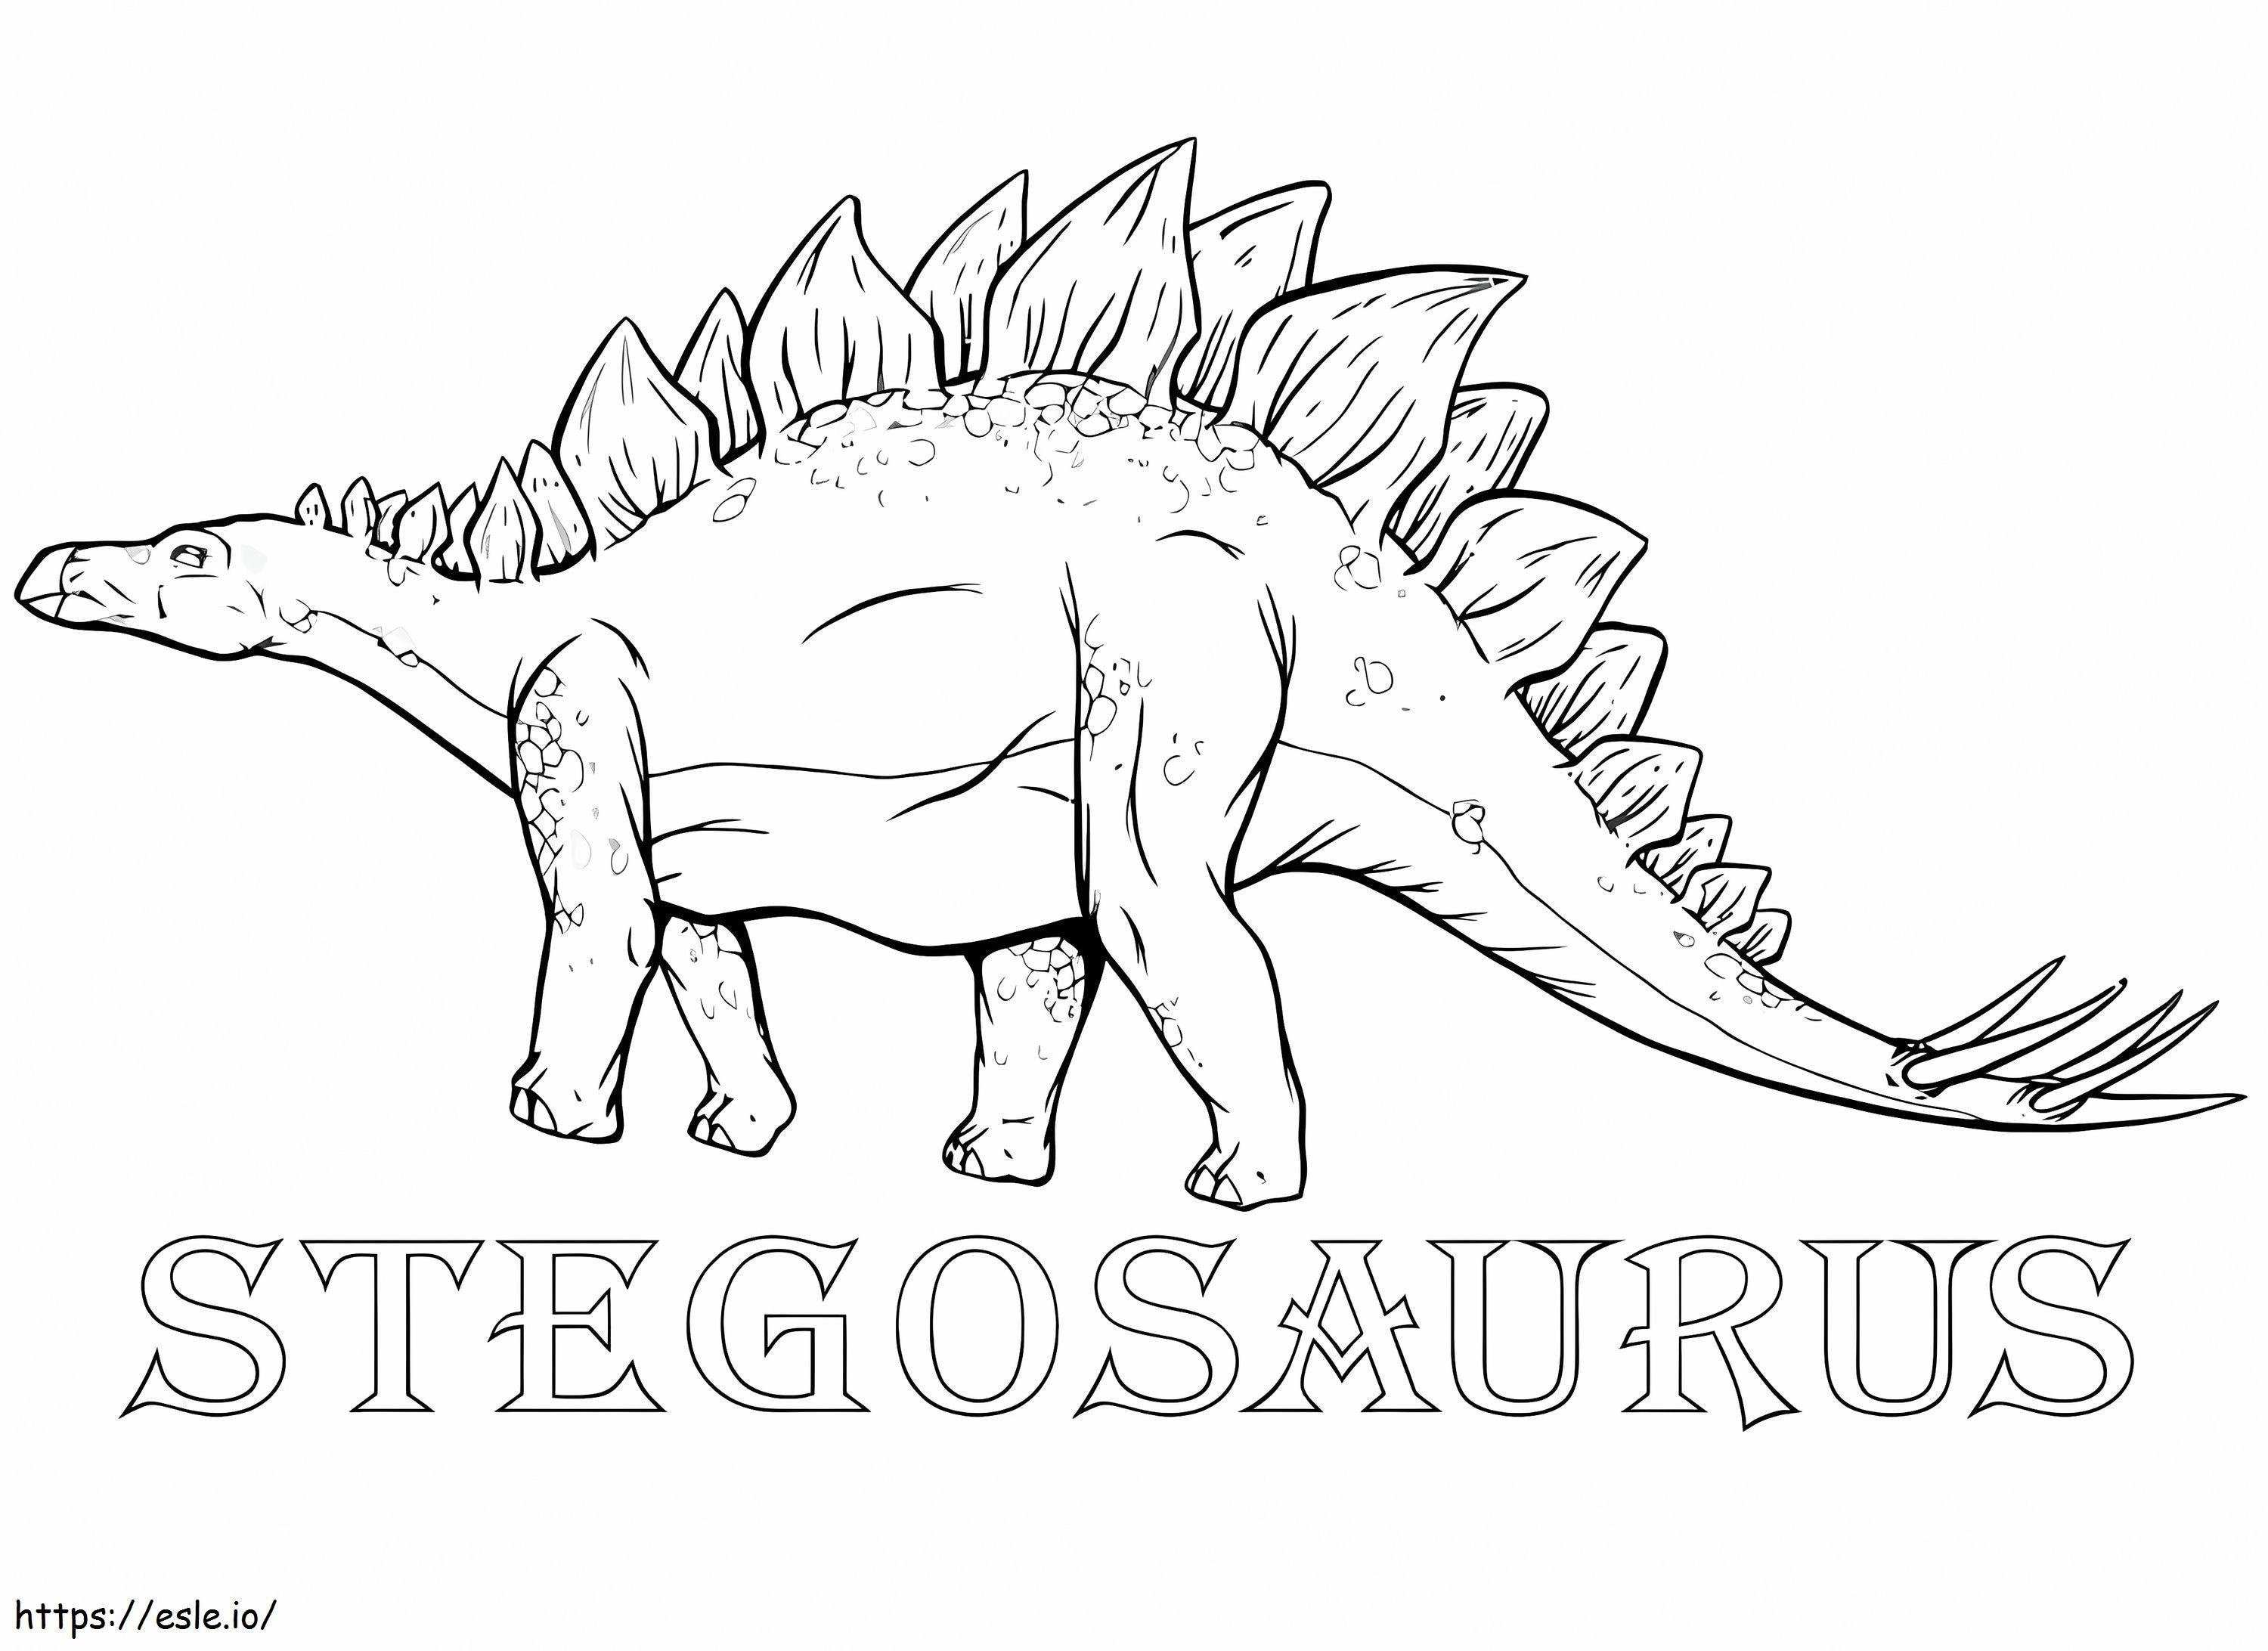 Stegosaurus 6 Gambar Mewarnai